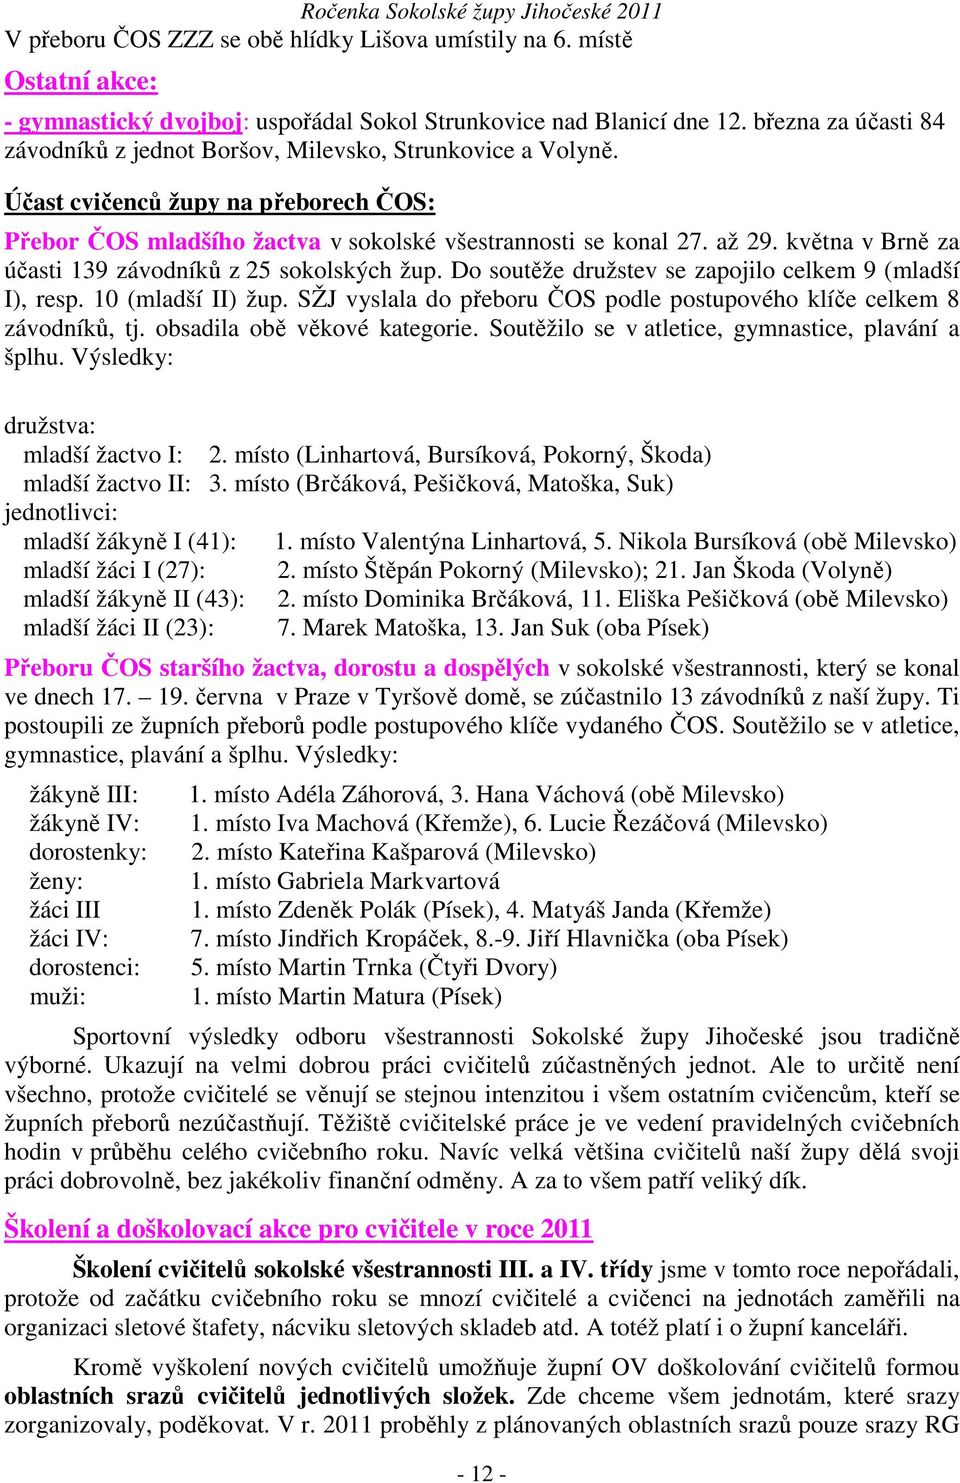 května v Brně za účasti 139 závodníků z 25 sokolských žup. Do soutěže družstev se zapojilo celkem 9 (mladší I), resp. 10 (mladší II) žup.